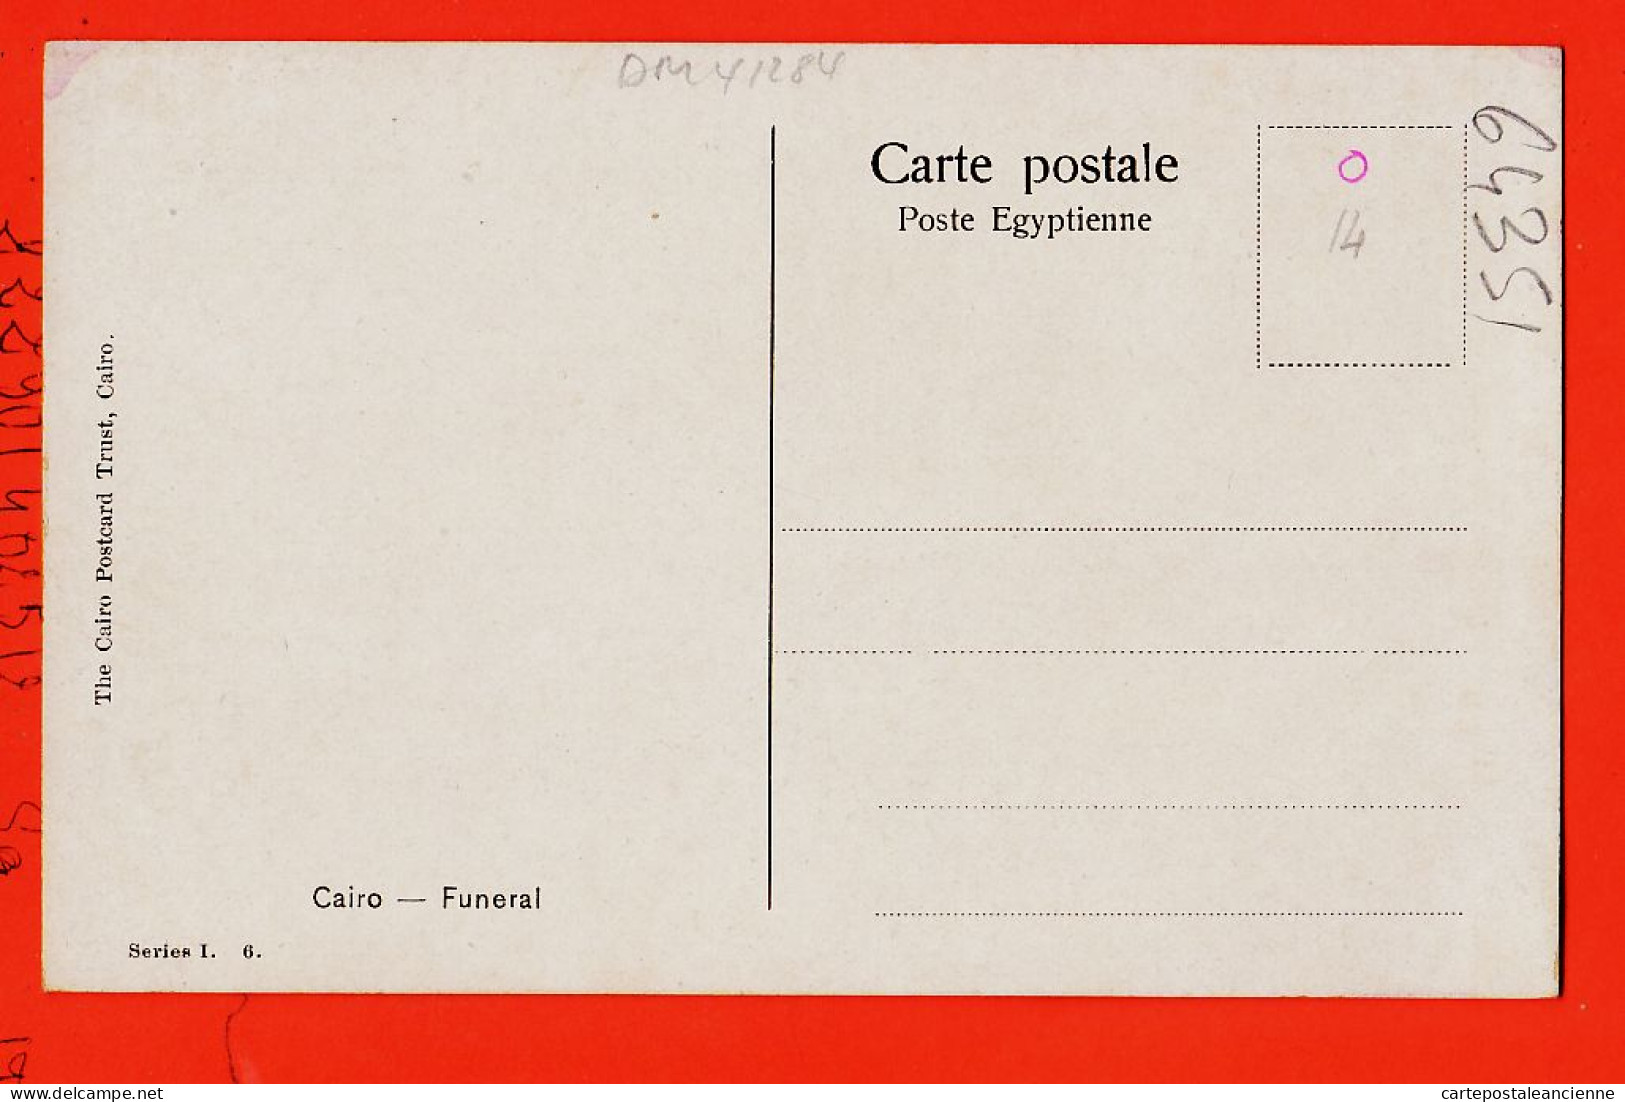 09959 / ♥️ Rare ◉ Enterrement Au CAIRE CAIRO Funeral KAIRO 1905s ◉ Ilust G.B VII 1910 ◉ POSTCARD TRUST Series I-6 - Le Caire